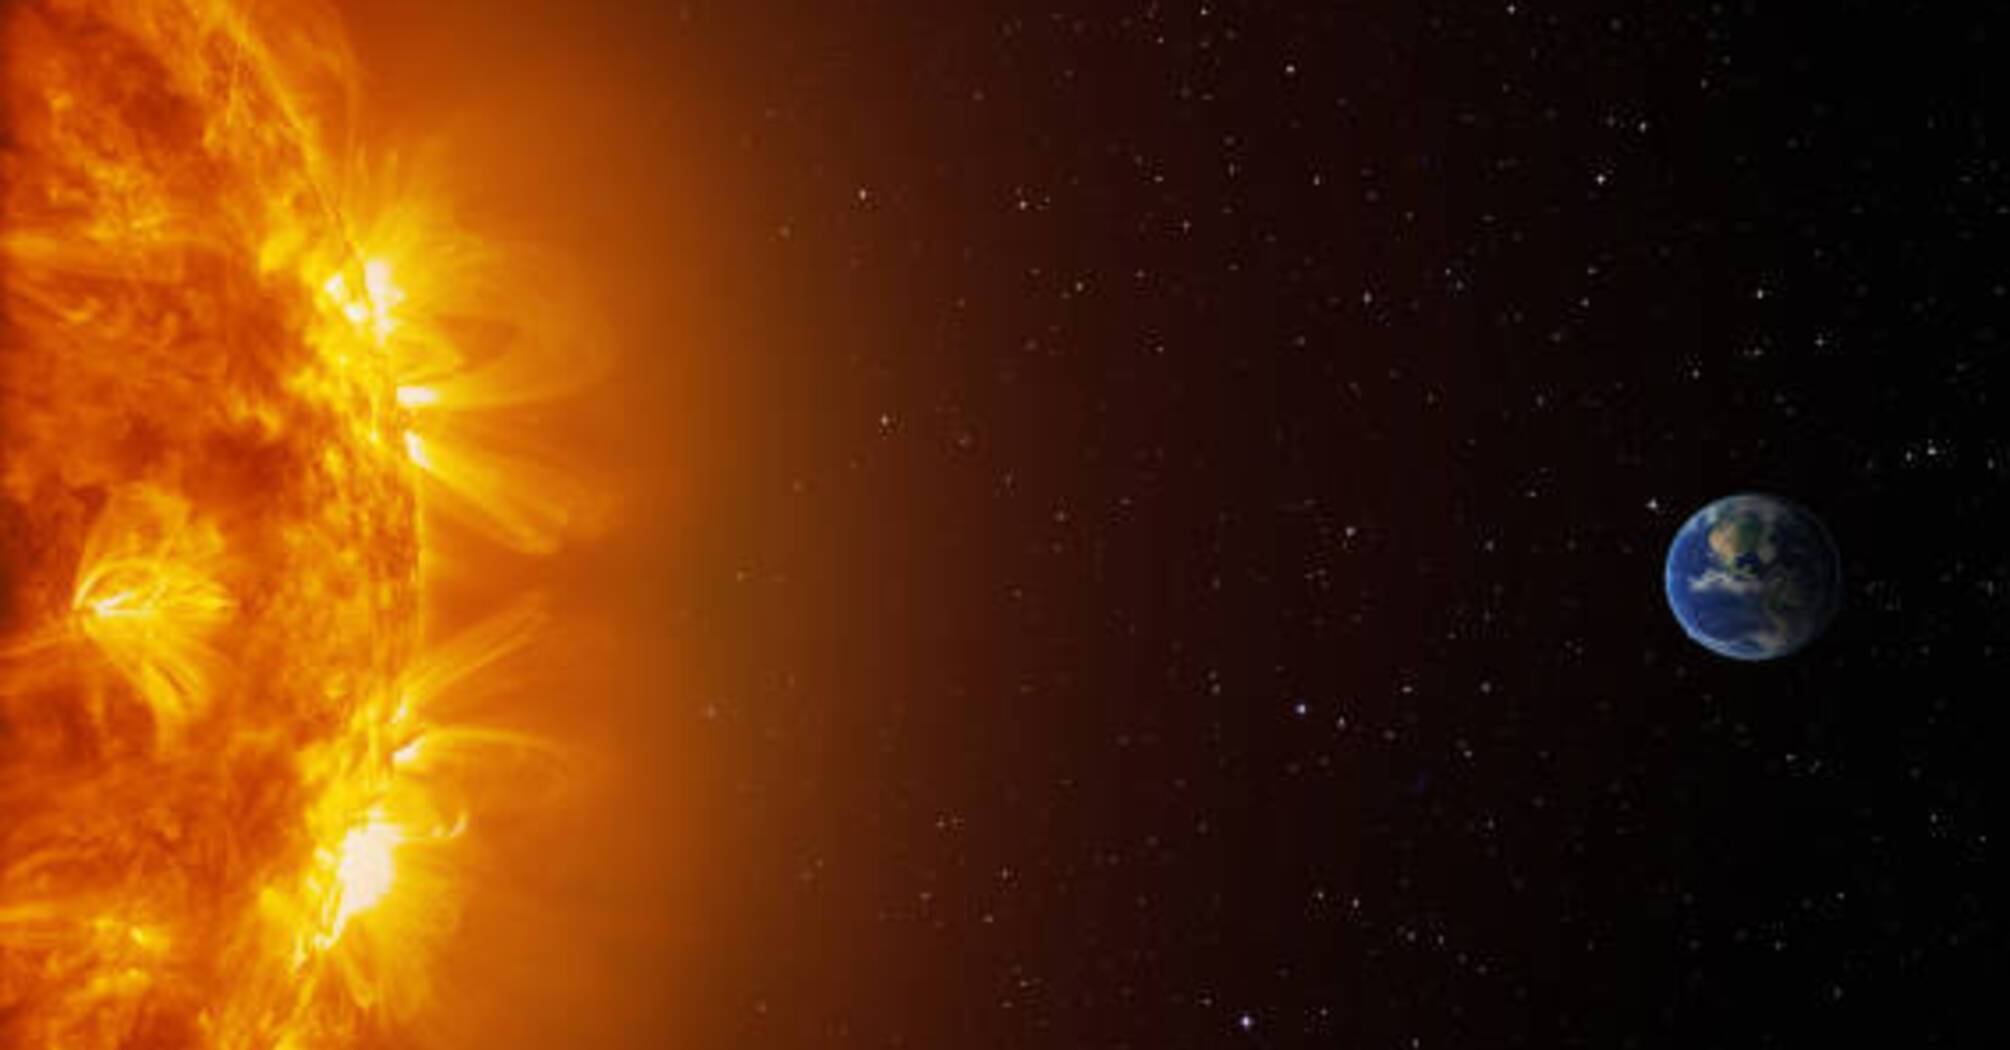 NASA: za 30 minut ludzkość dowie się, jak śmiertelna burza słoneczna uderzy w Ziemię